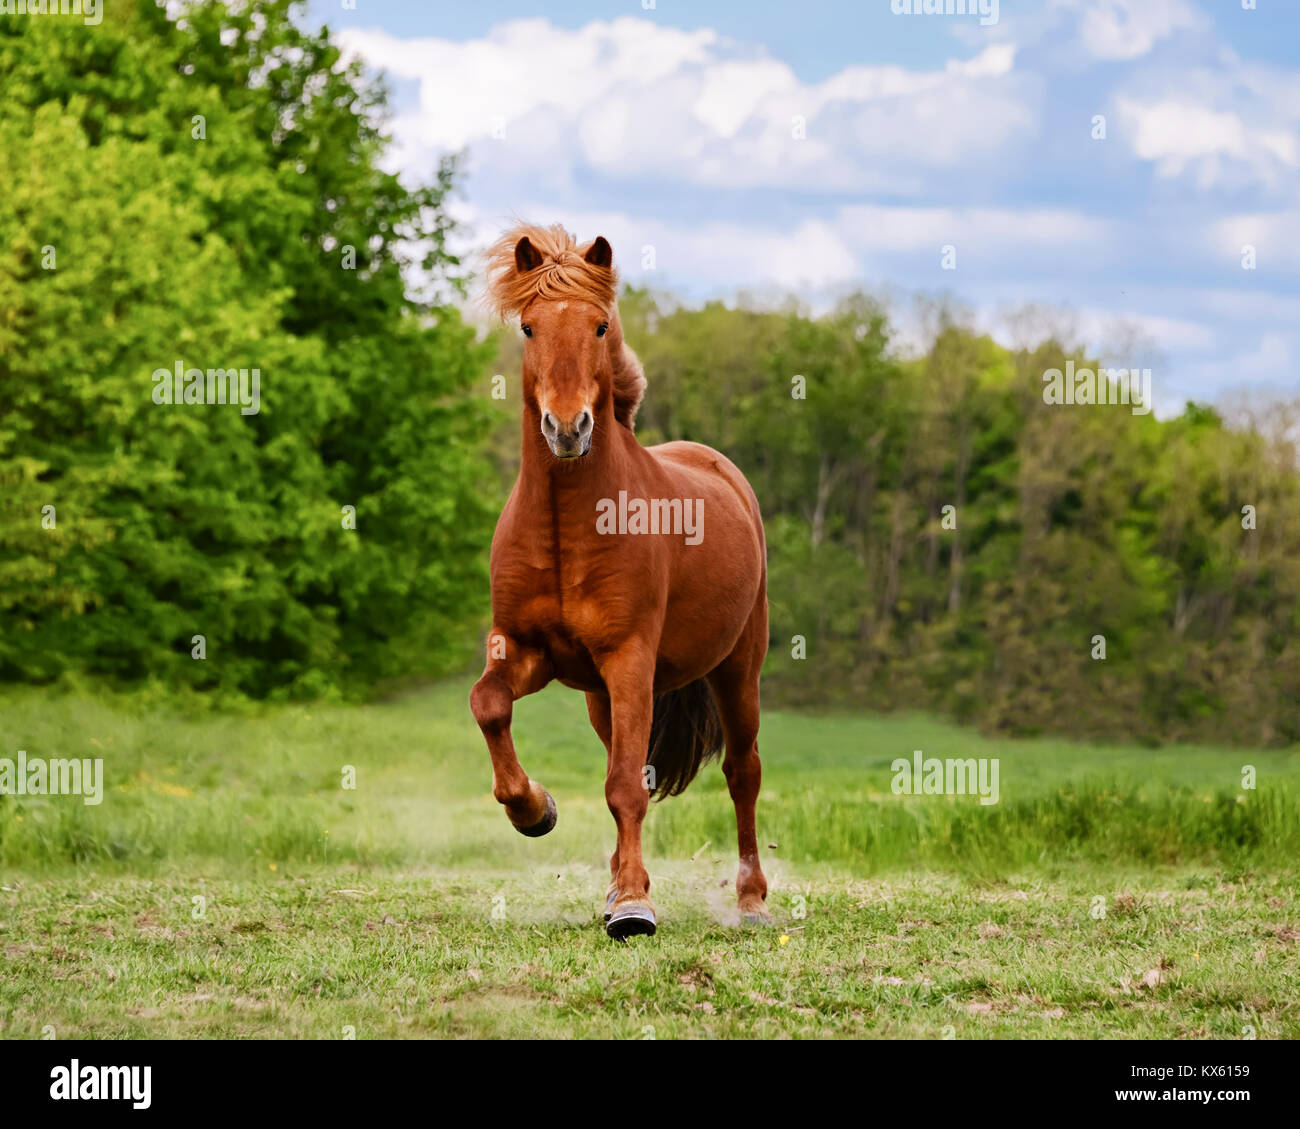 Un cheval islandais tourne à un tölt à travers un pré, toelt est une démarche naturelle unique de cette race,Allemagne. Banque D'Images